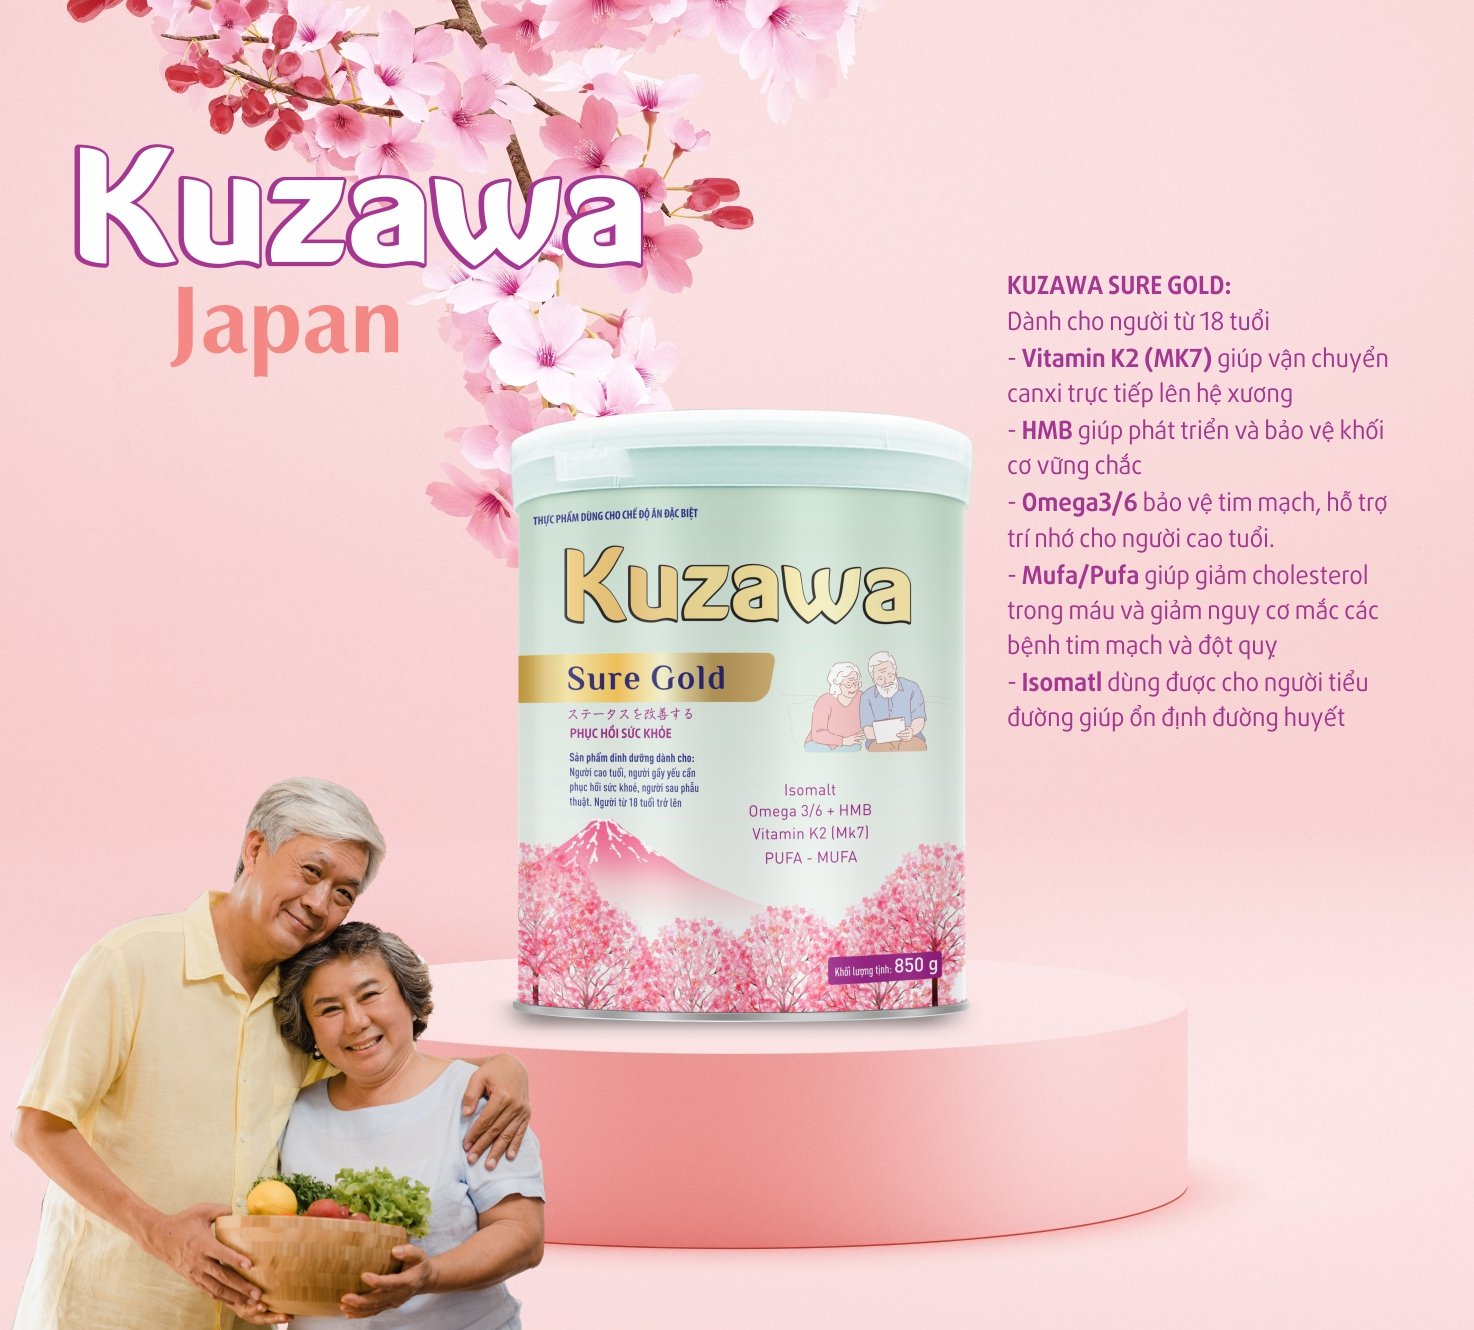 Sữa Kuzawa Sure Gold và Kuzawa Canxi bổ sung Isomalt – Đường dùng cho người tiểu đường - 3